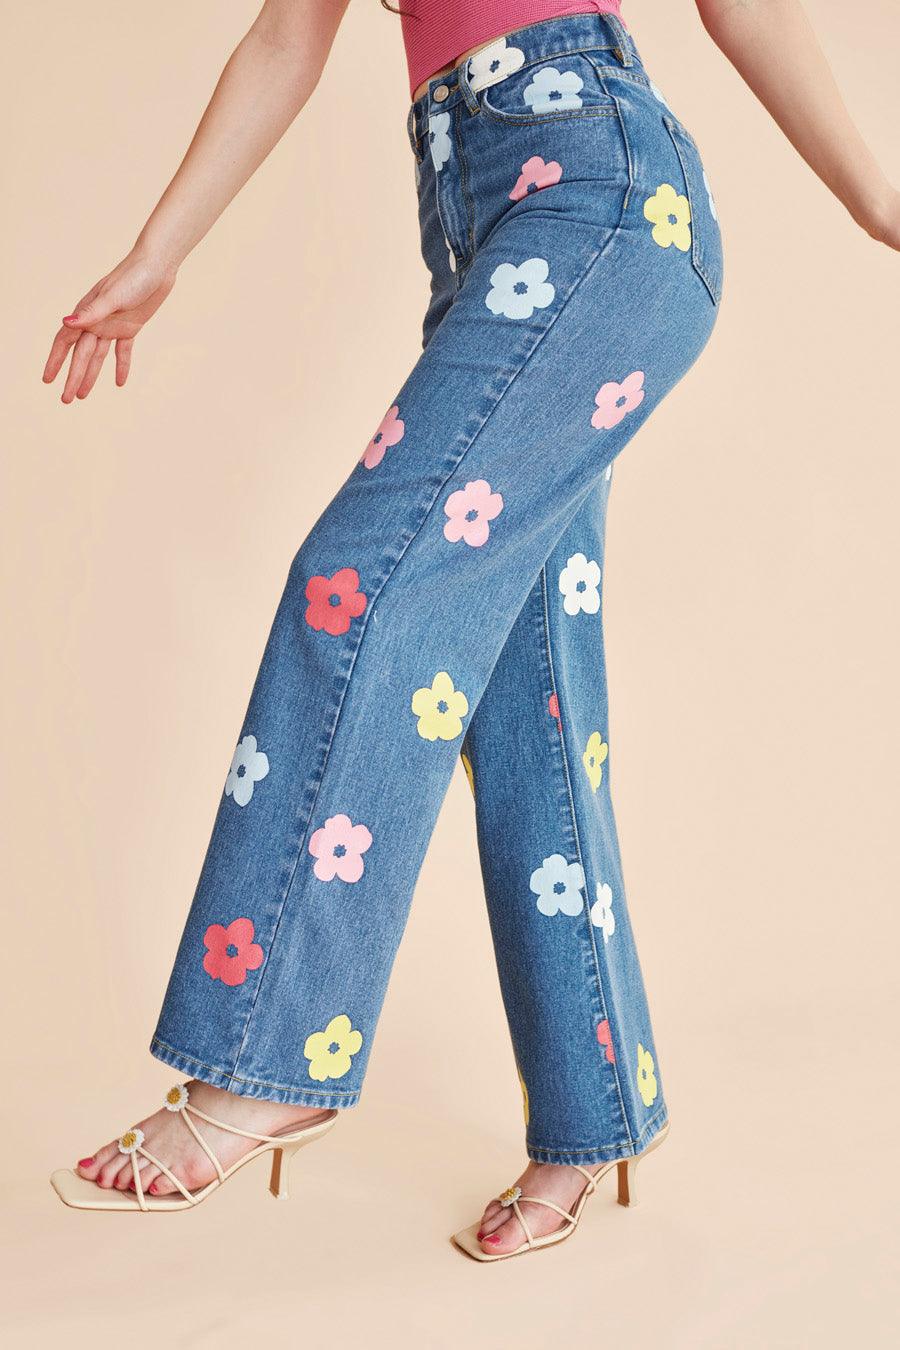 Jeans tiro alto flores - ECRU